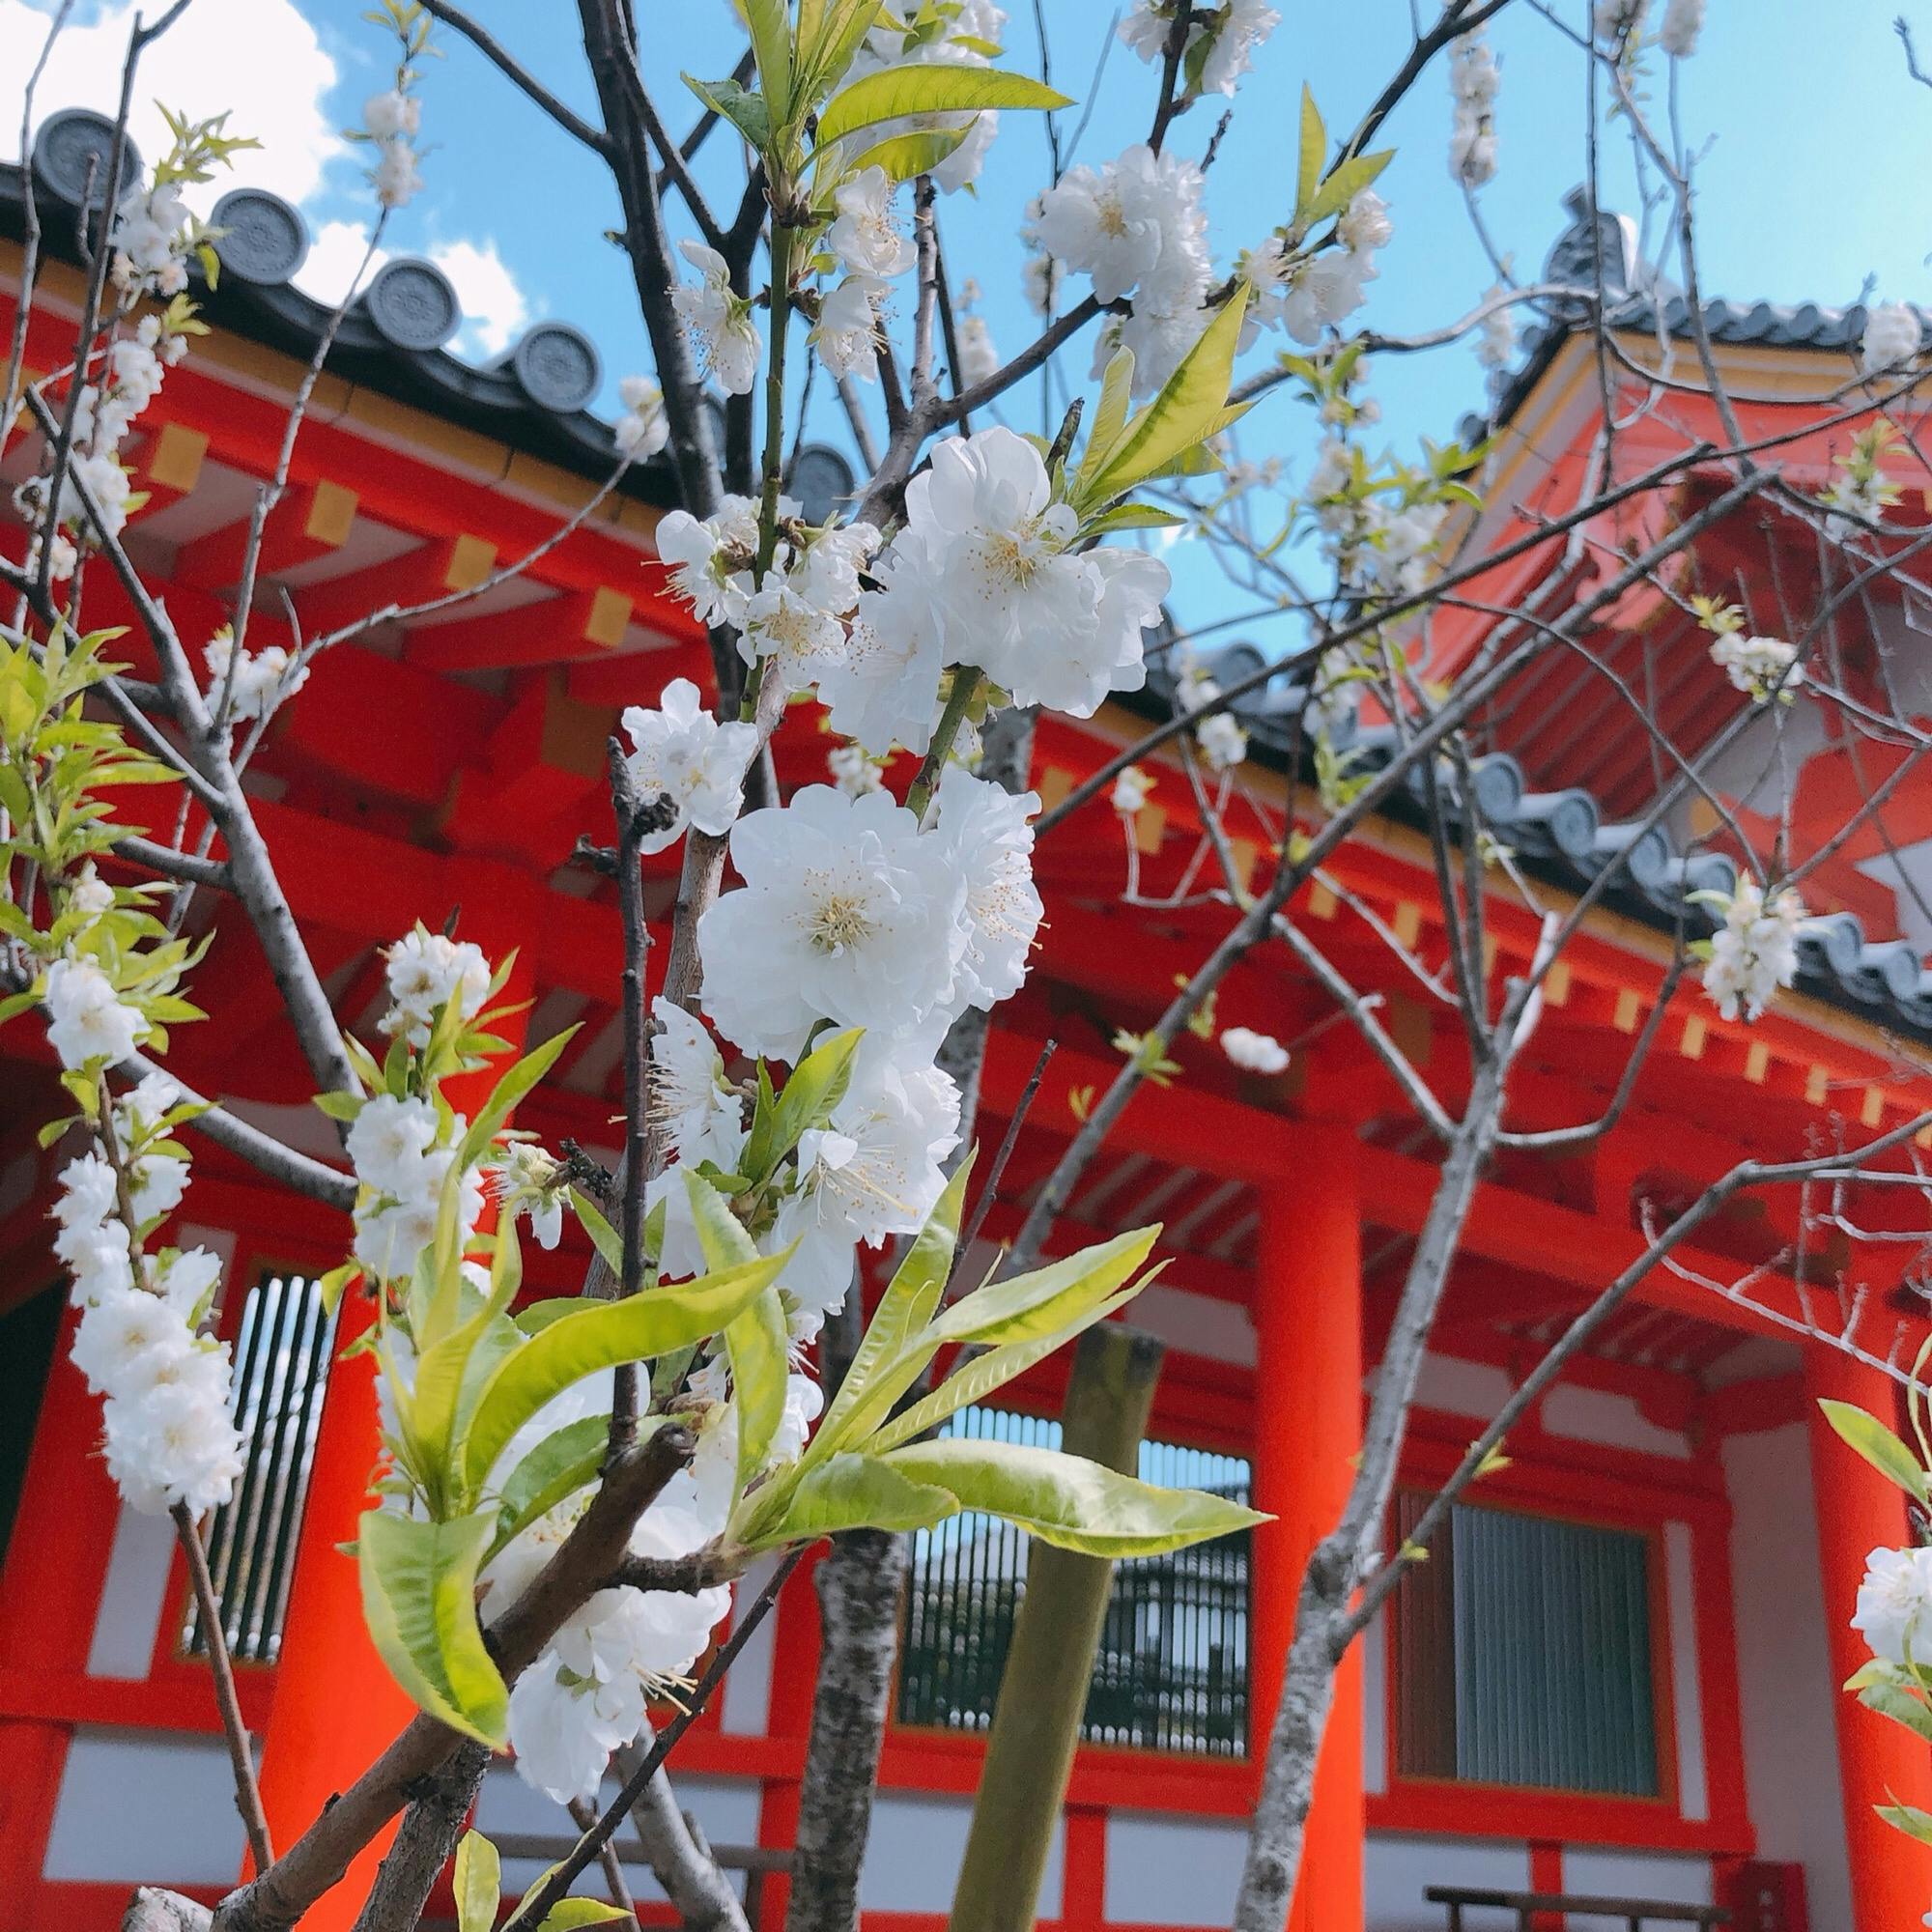 三十三間堂 さんじゅうさんげんどう 蓮華王院 の投稿写真 感想 みどころ Kyoto Japan 京都 三十三間堂 トリップノート